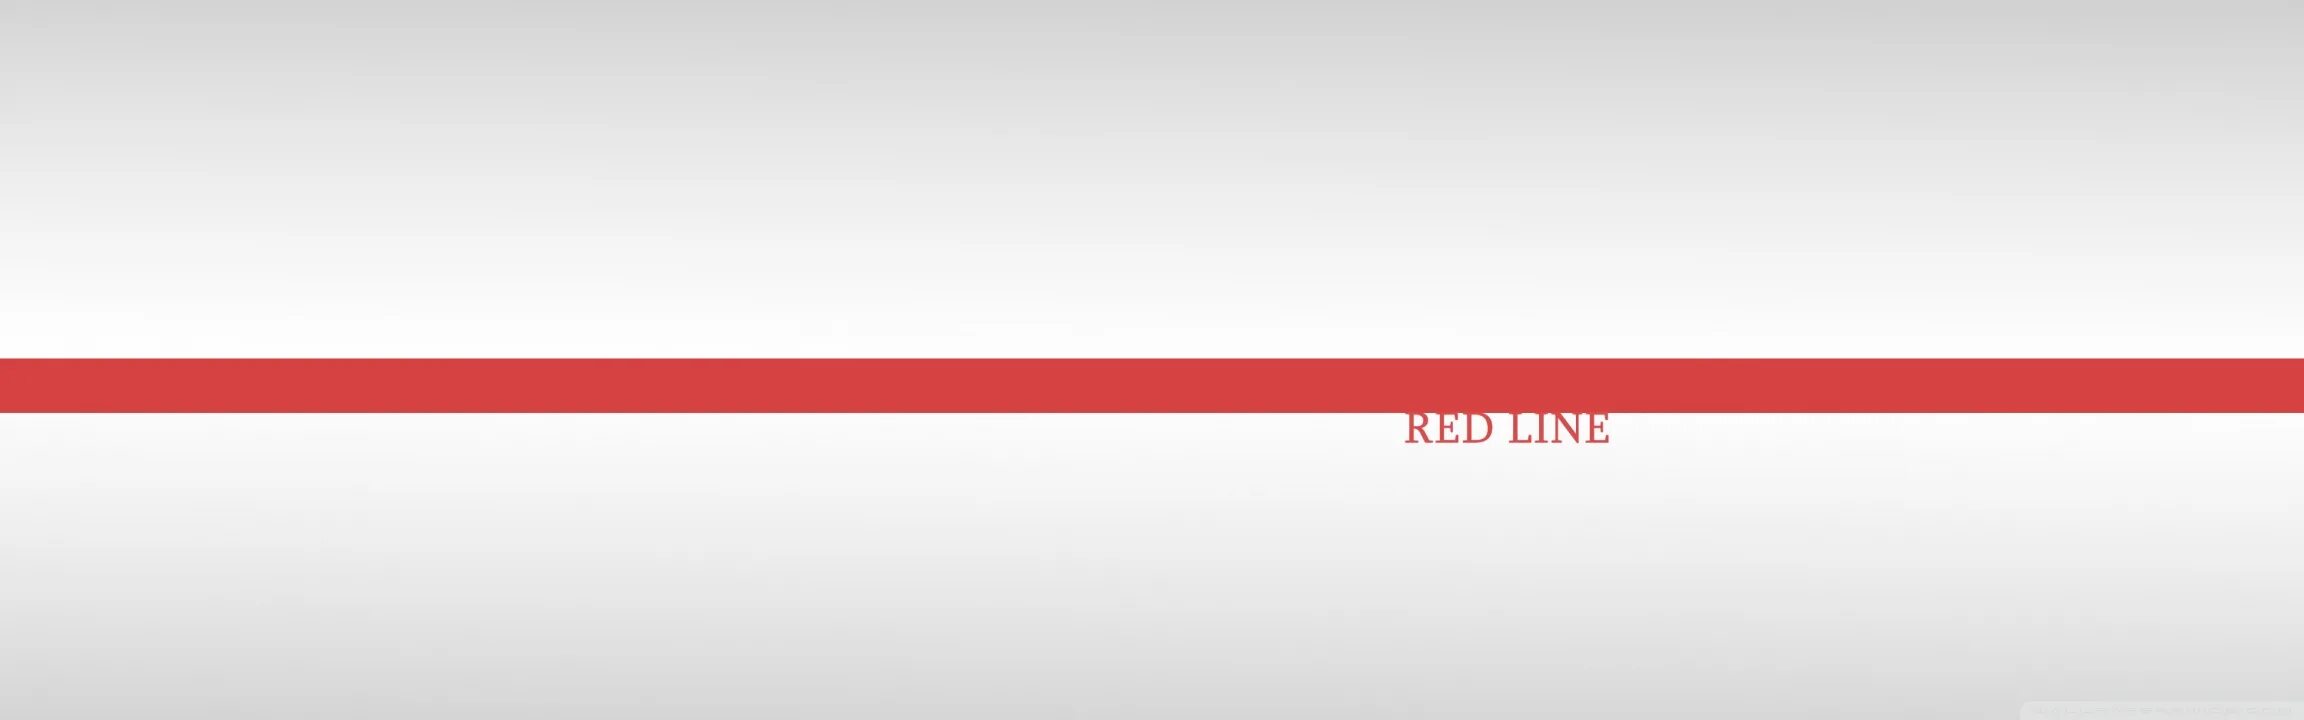 Большая красная линия. Красная линия. Красная полоса на белом фоне. Белый фон с красными линиями. Красная линия Red line.